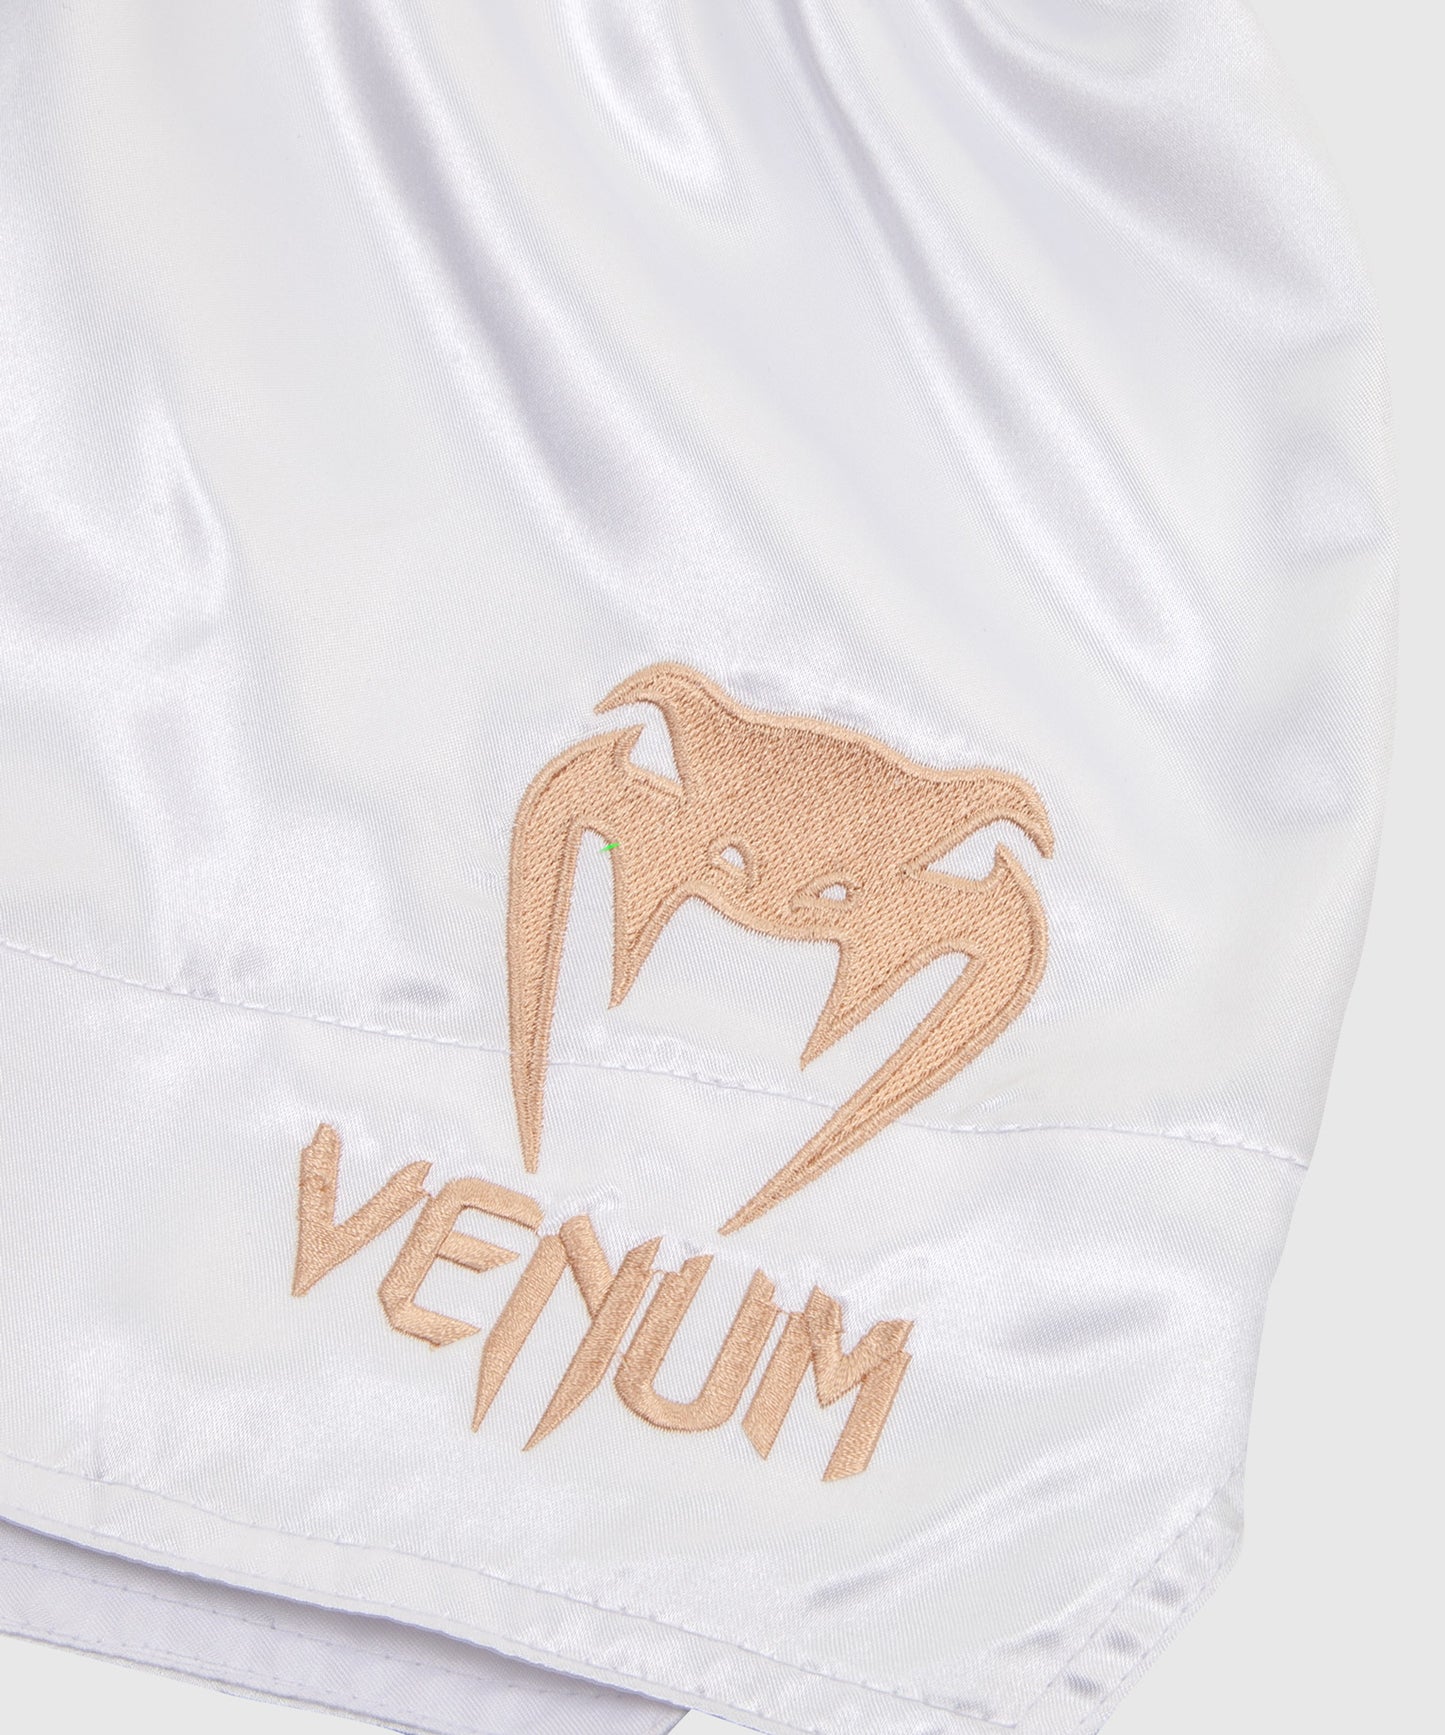 Venum Classic Muay Thai Short - White/Gold| BEEST